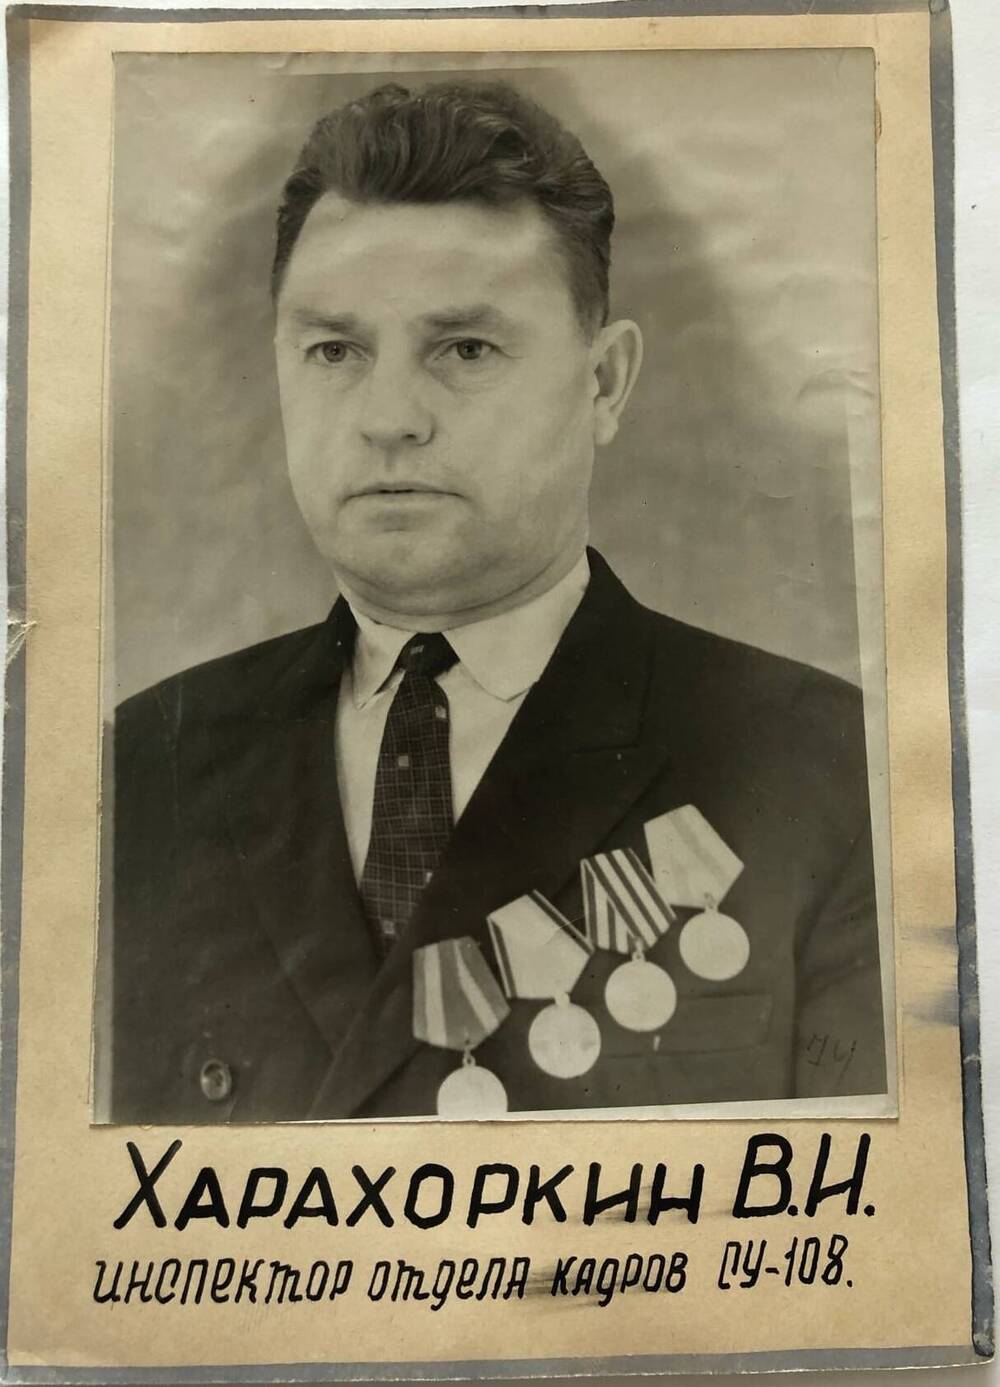 Фотография Харахоркина В.И., камышанина, участника Великой Отечественной войны 1941-1945 гг., защитника Сталинграда